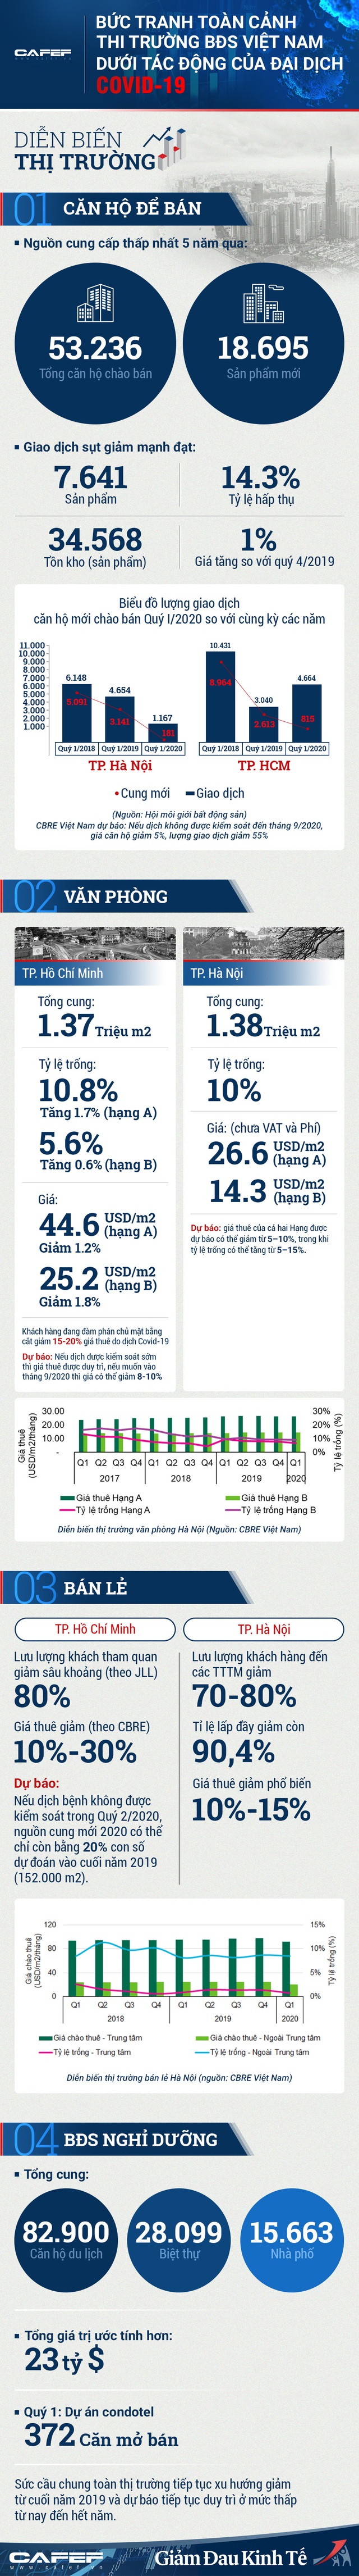 Infographic: Bức tranh toàn cảnh thị trường BĐS Việt Nam dưới tác động của đại dịch Covid-19 - Ảnh 1.